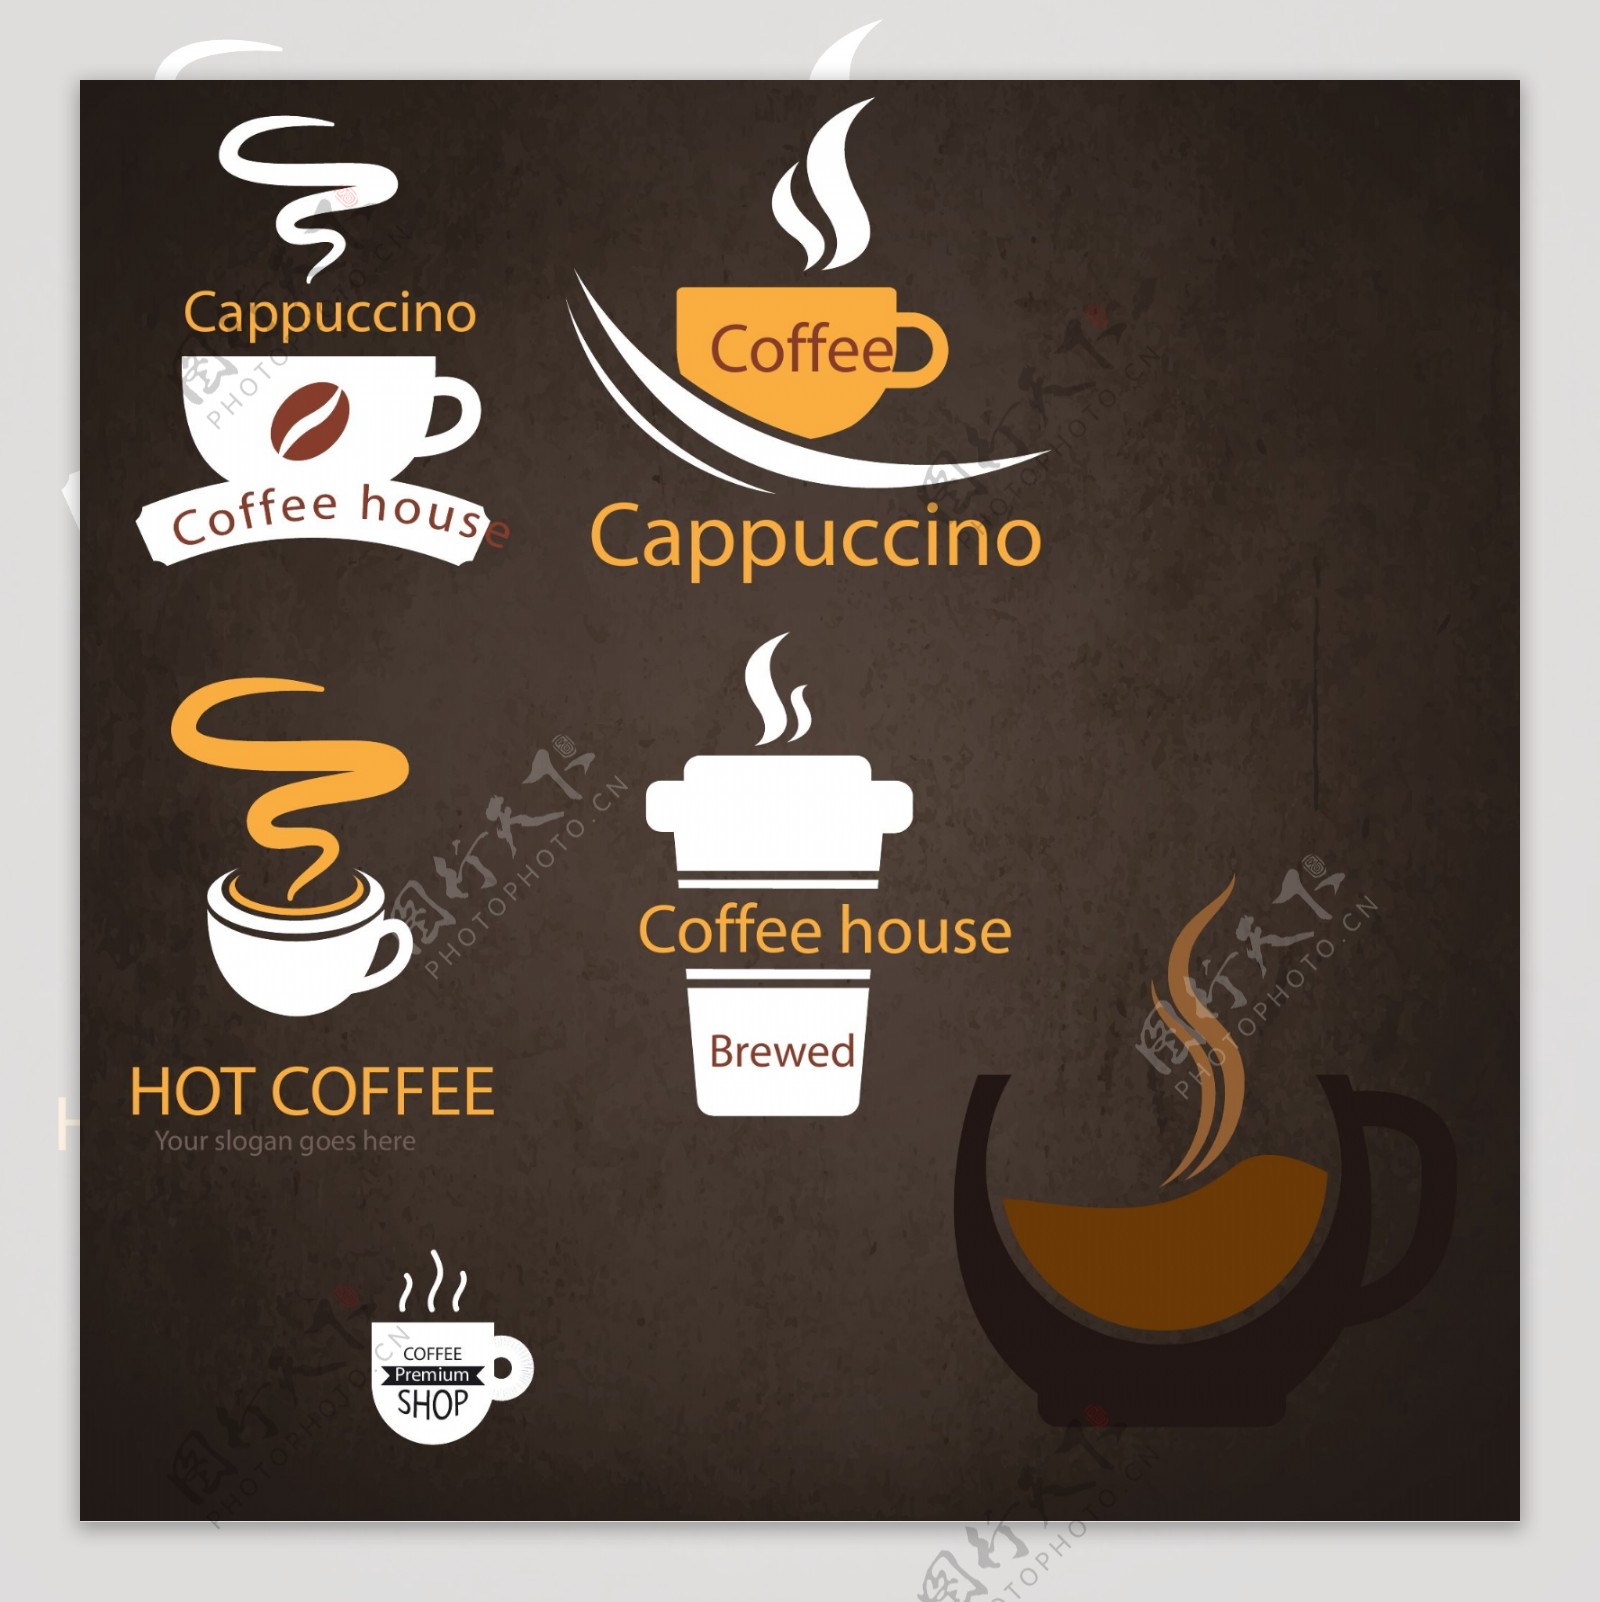 扁平化的咖啡标志矢量素材